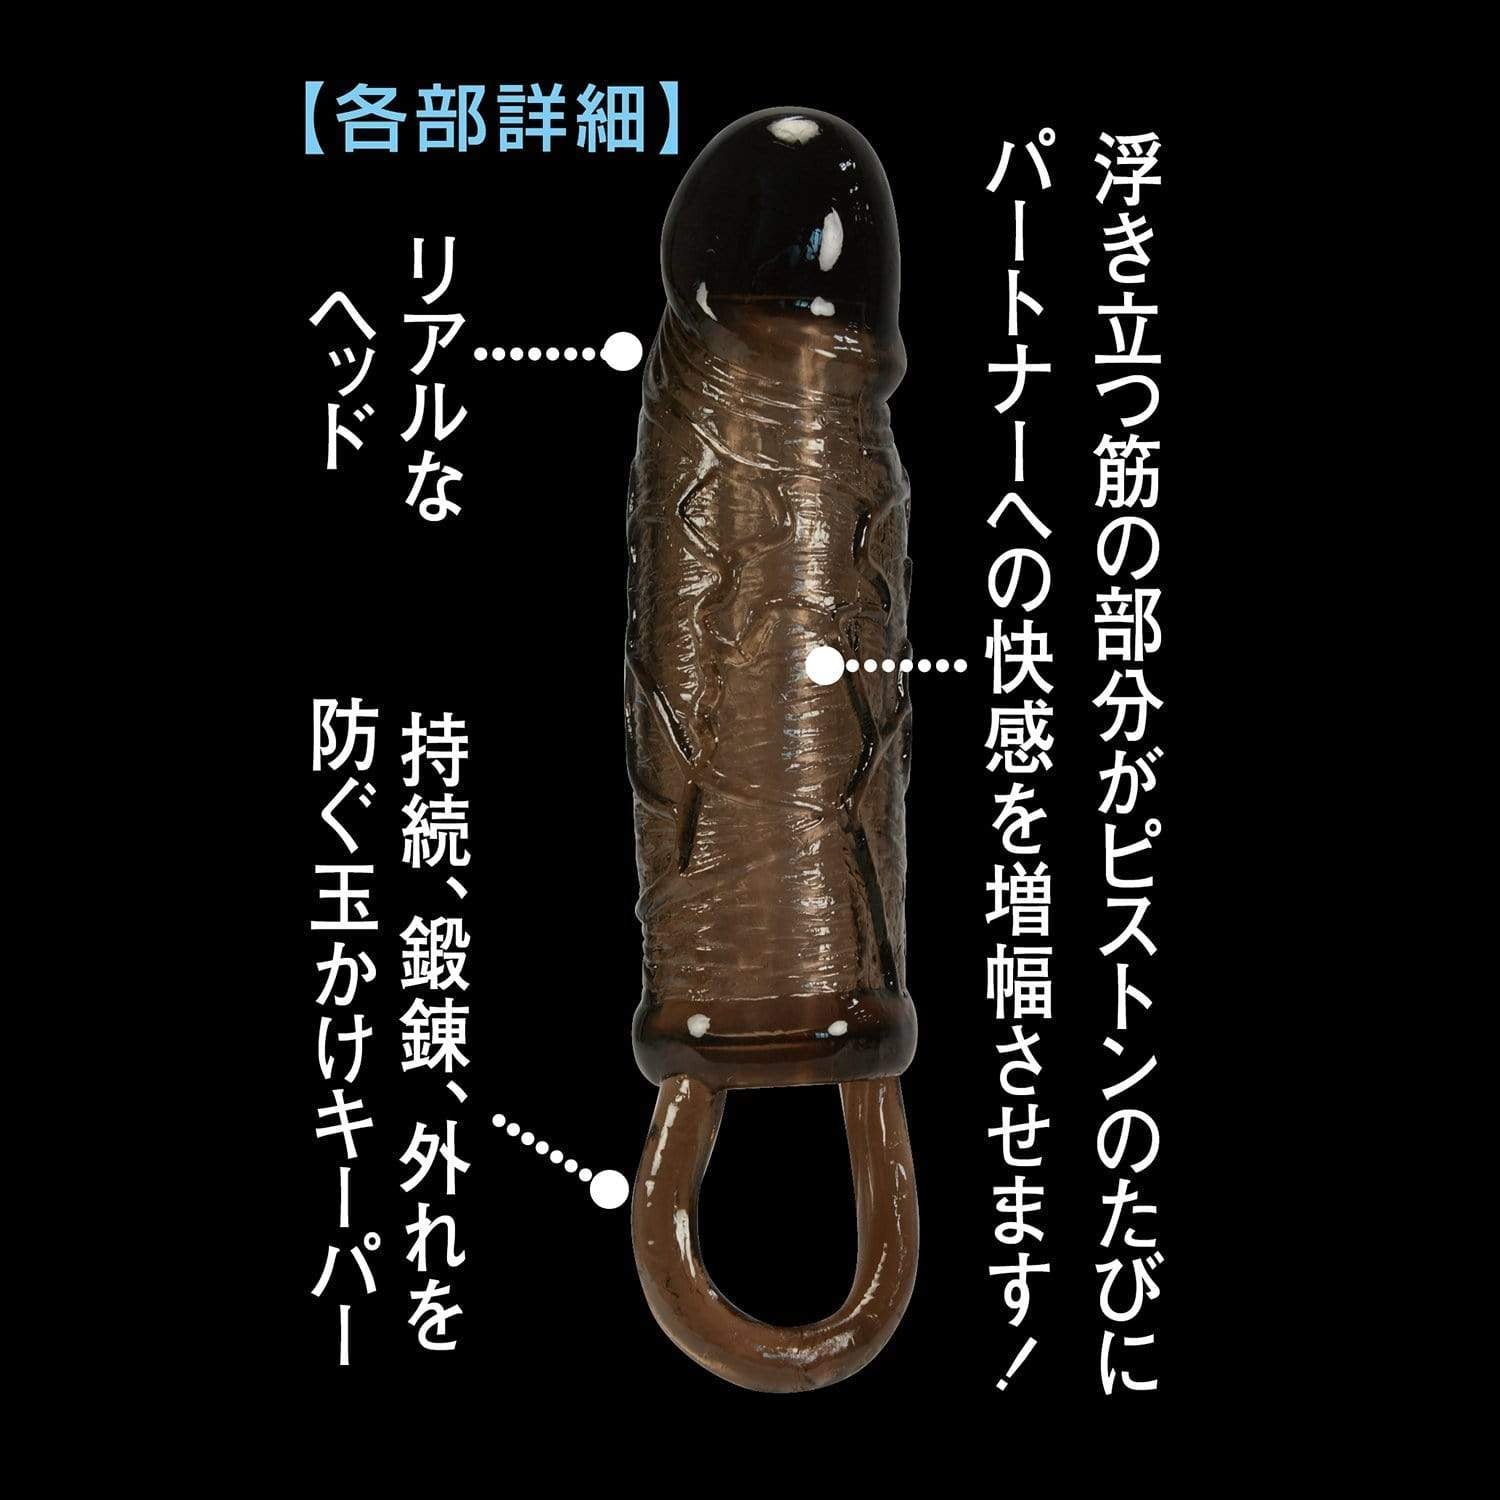 NPG - Sexual Retsuden 4 Sangokushi Kanu Cock Sleeve with Ball Strap (Black) -  Cock Sleeves (Non Vibration)  Durio.sg